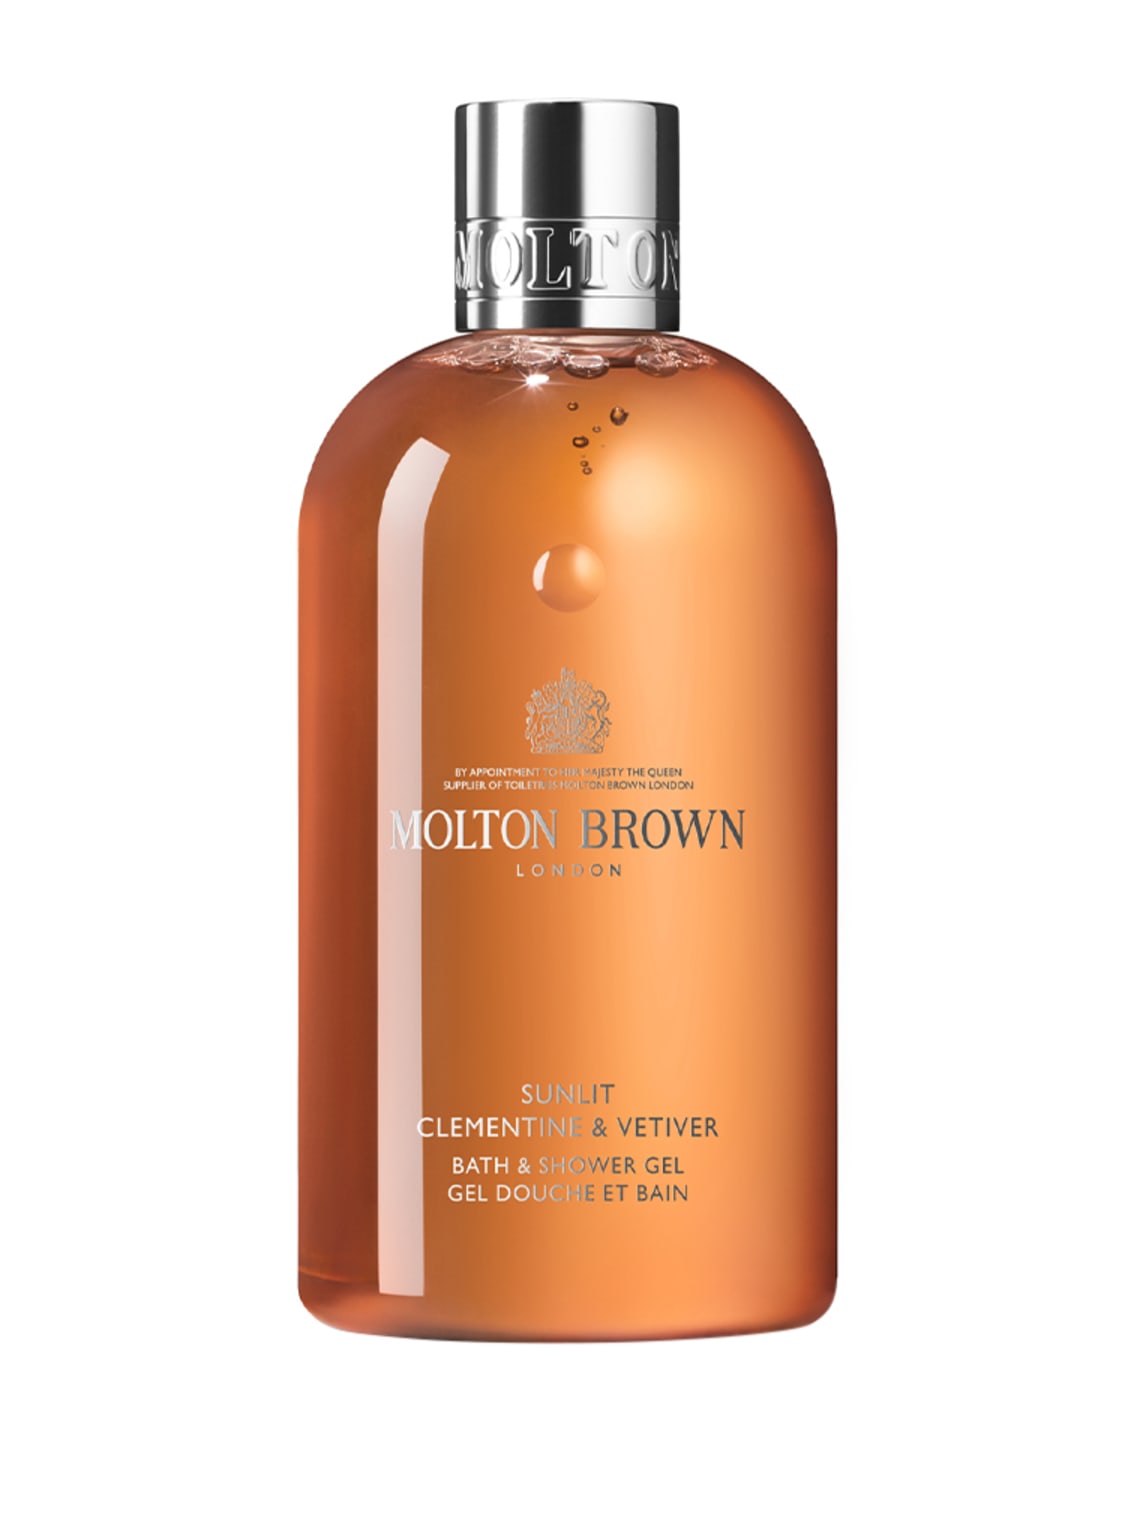 Molton Brown Sunlit Clementine & Vetiver Bath & Shower Gel 300 ml von MOLTON BROWN